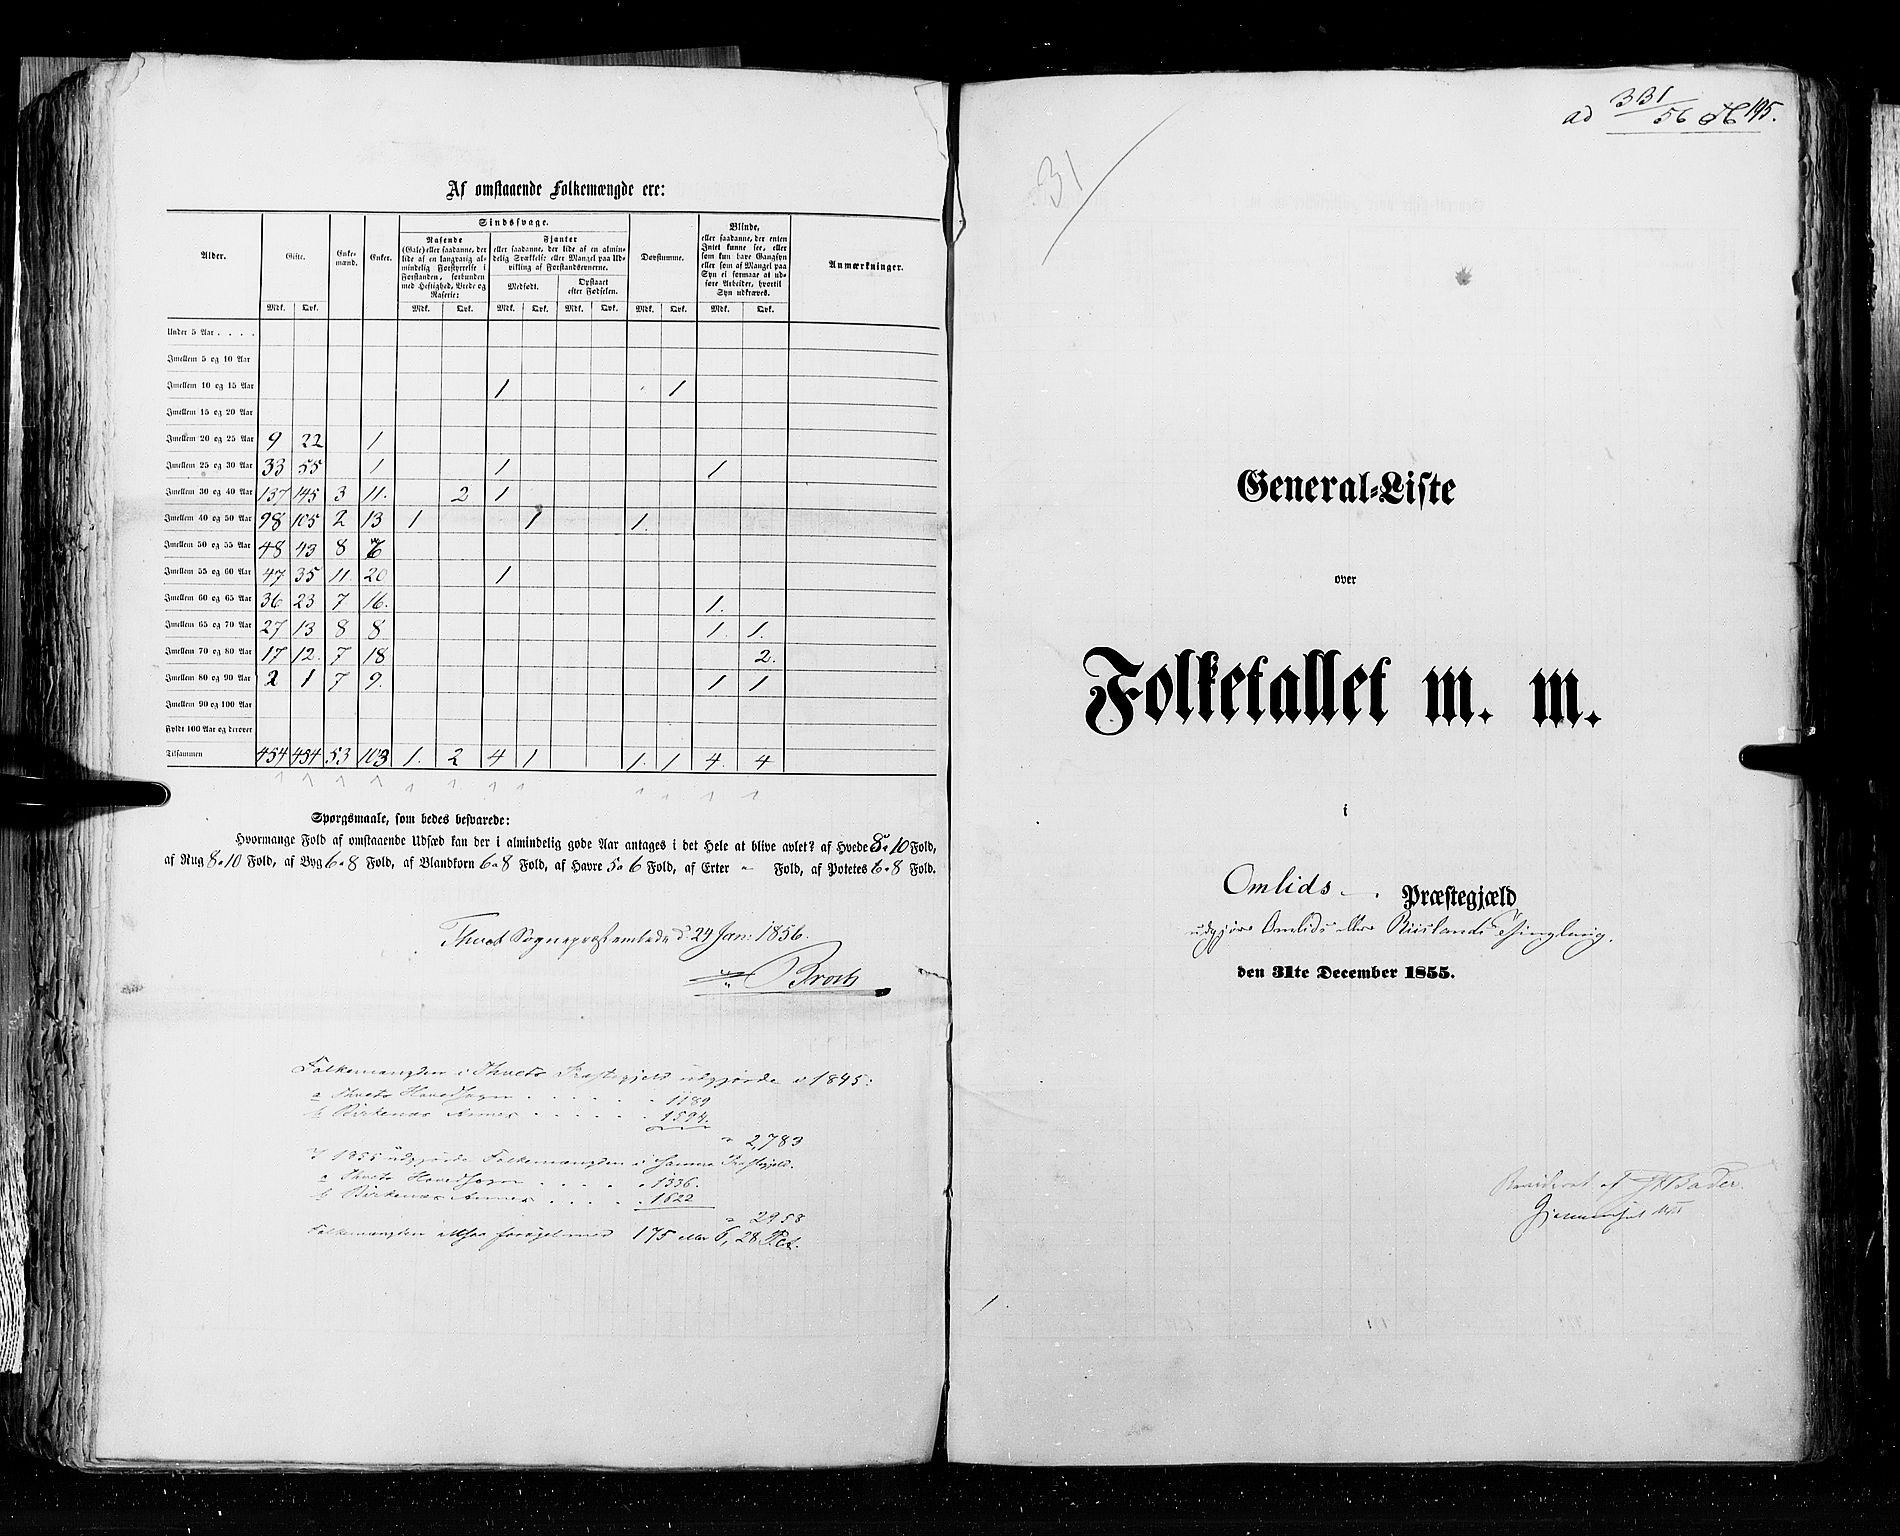 RA, Census 1855, vol. 3: Bratsberg amt, Nedenes amt og Lister og Mandal amt, 1855, p. 195